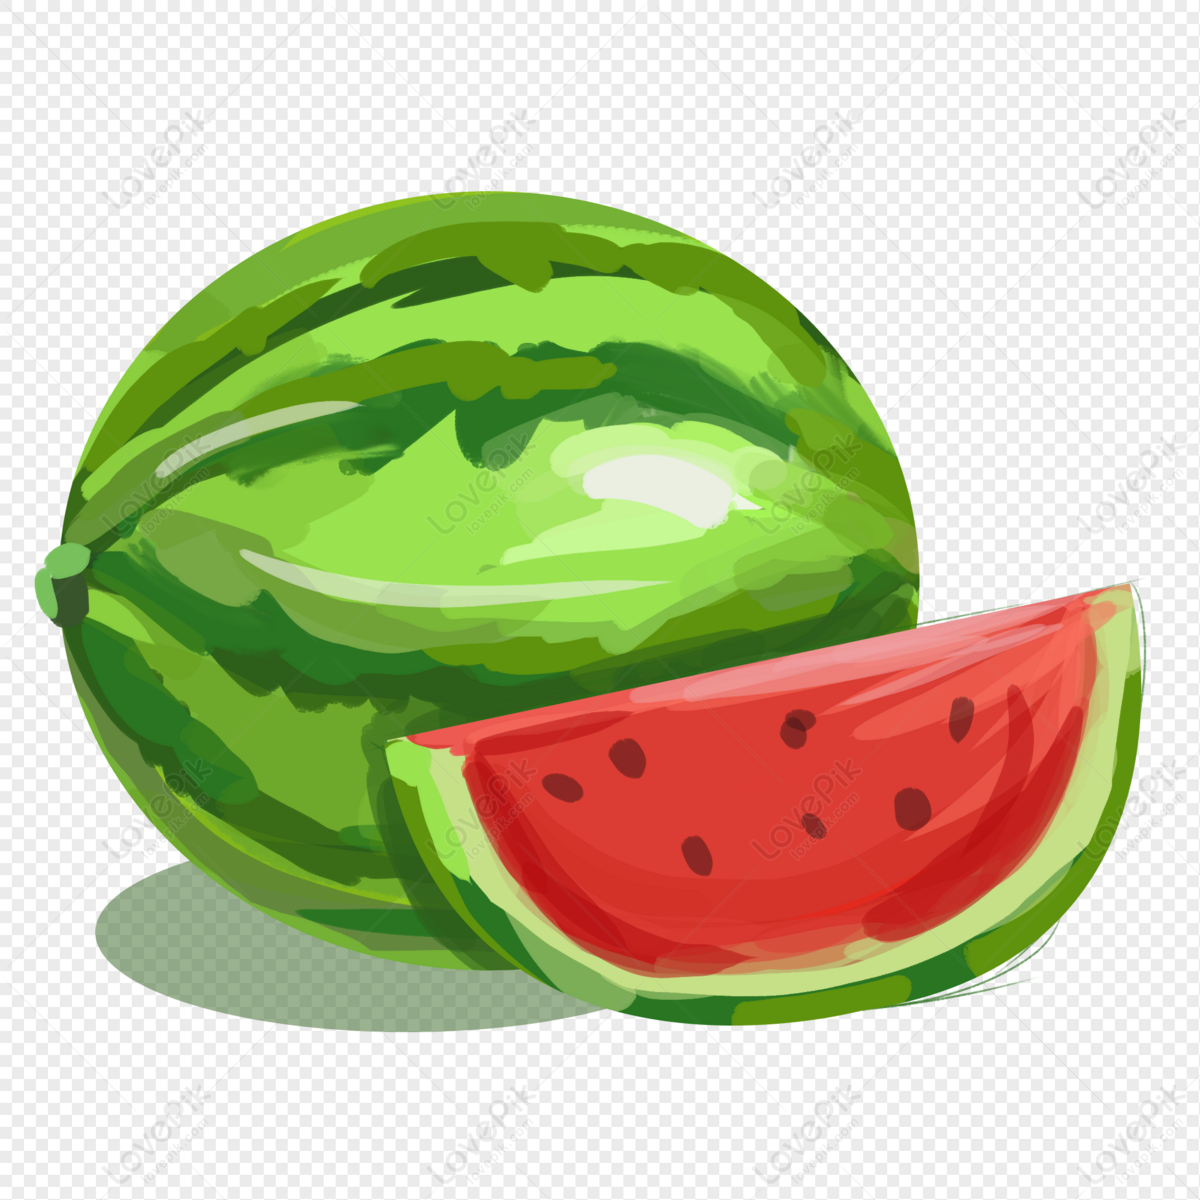 Summer Fruit Watermelon Hand Drawn Illustration Elements PNG: Hãy đắm mình trong những hình ảnh tươi tắn về quả dưa hấu cực đáng yêu! Với nét vẽ tay chân thực và độ chi tiết tuyệt vời, những hình ảnh này sẽ mang đến cho bạn niềm vui và cảm giác mát mẻ của mùa hè.